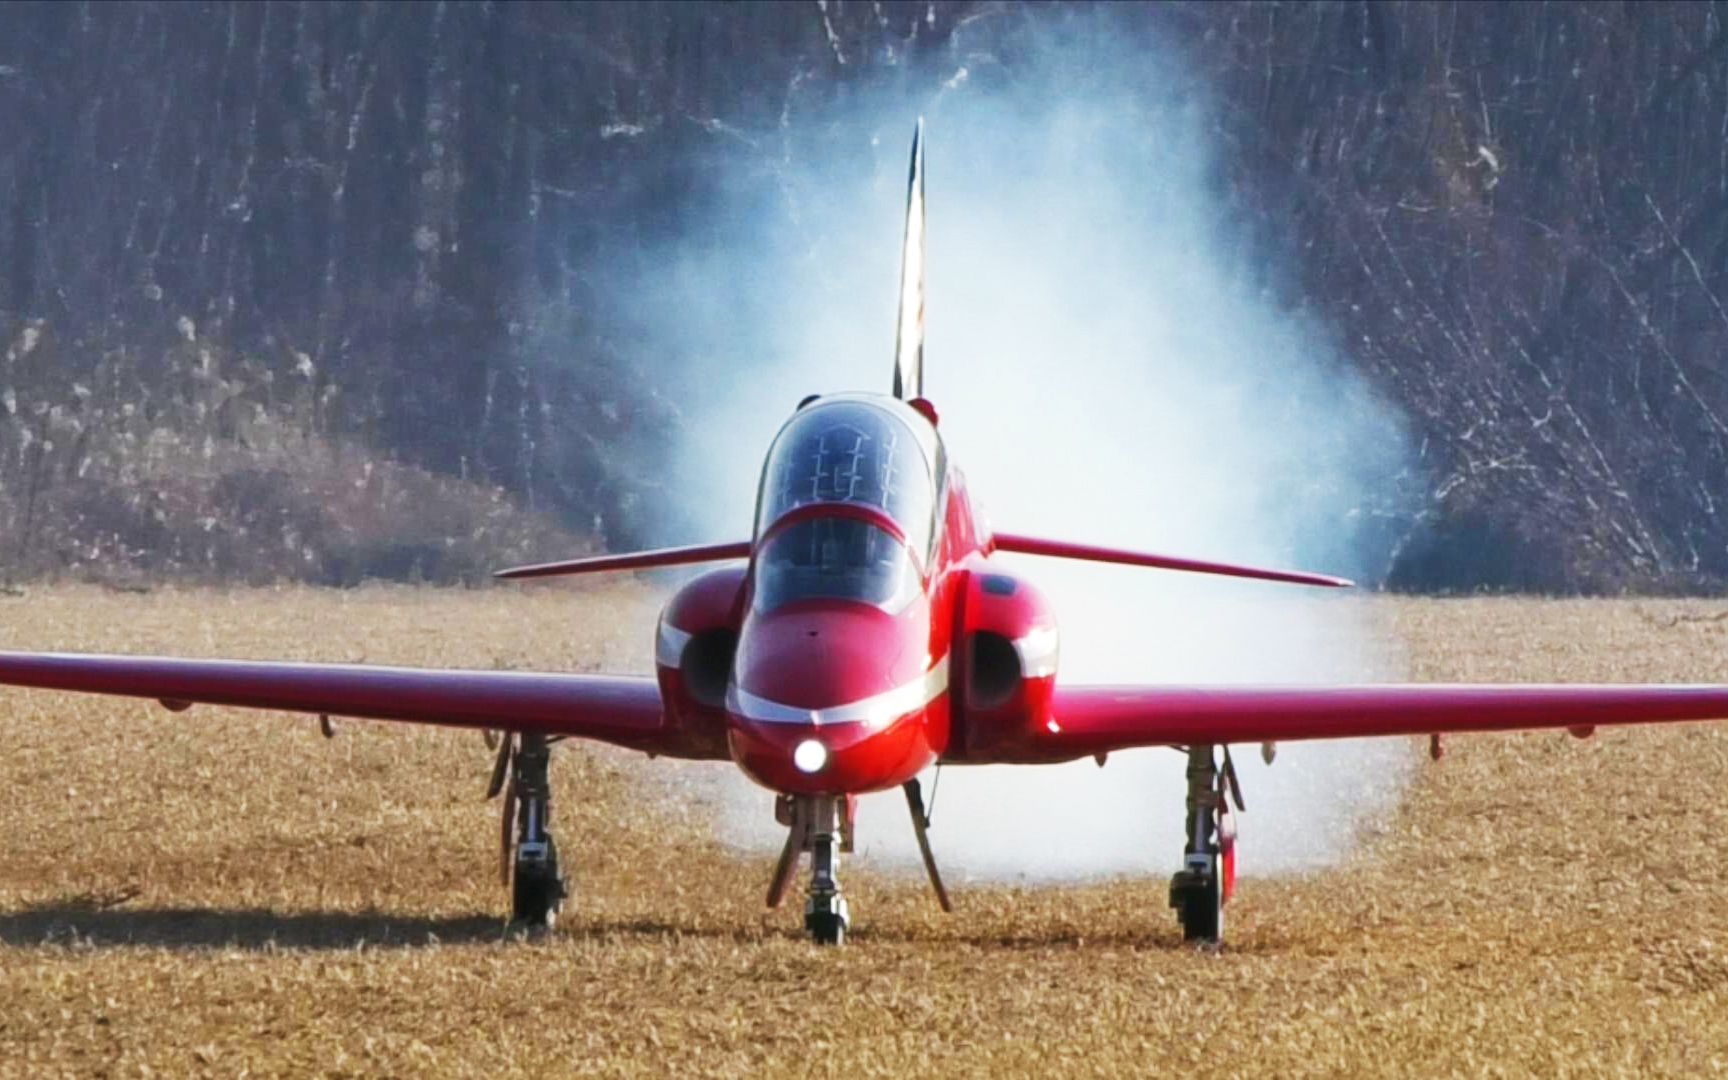 【涡喷飞行】高清50fps拍摄北京模友32kg红箭涡喷航模像真机飞行